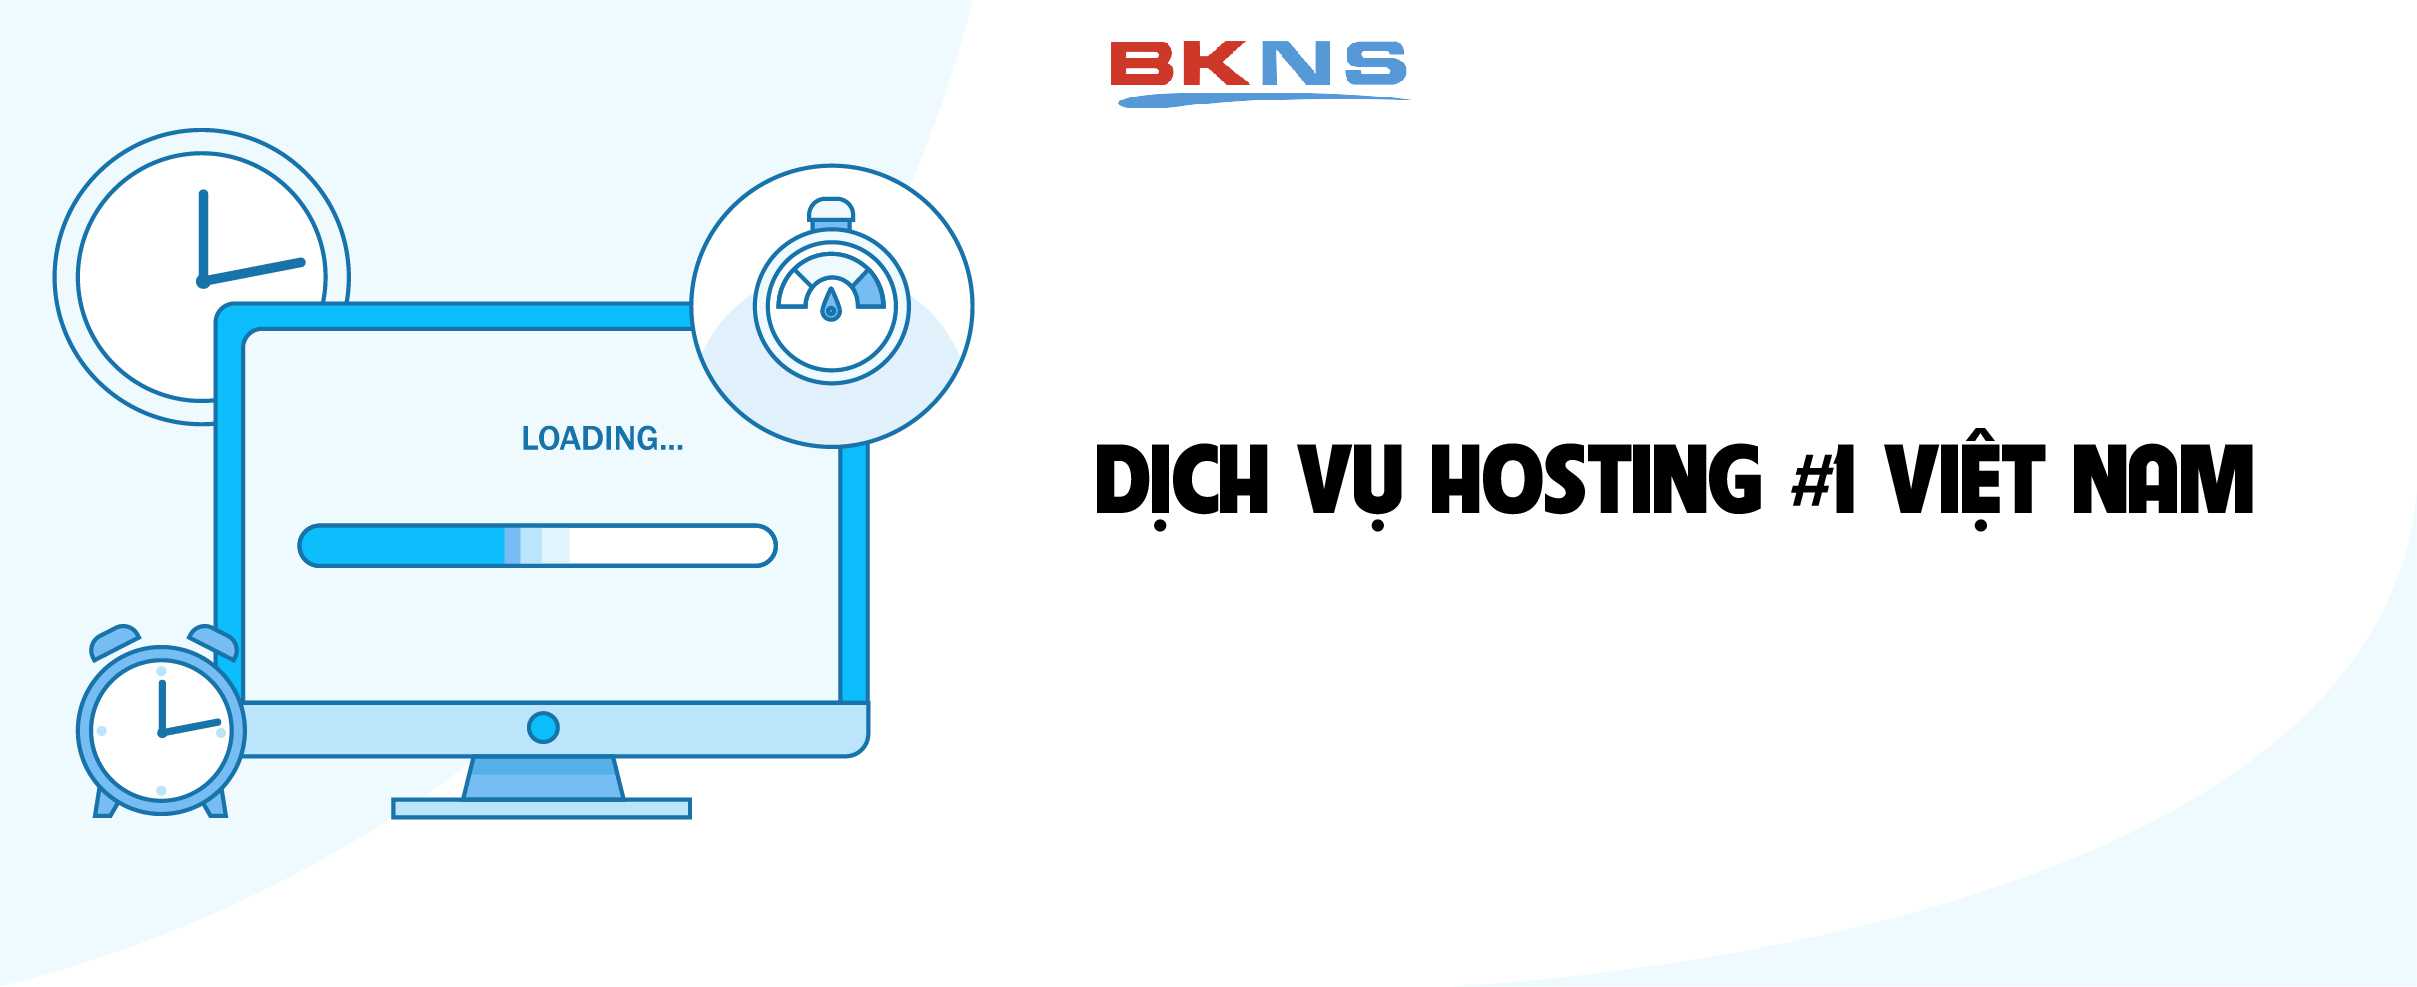 BKNS hoạt động mạnh tại thị trường dịch vụ cung cấp hosting